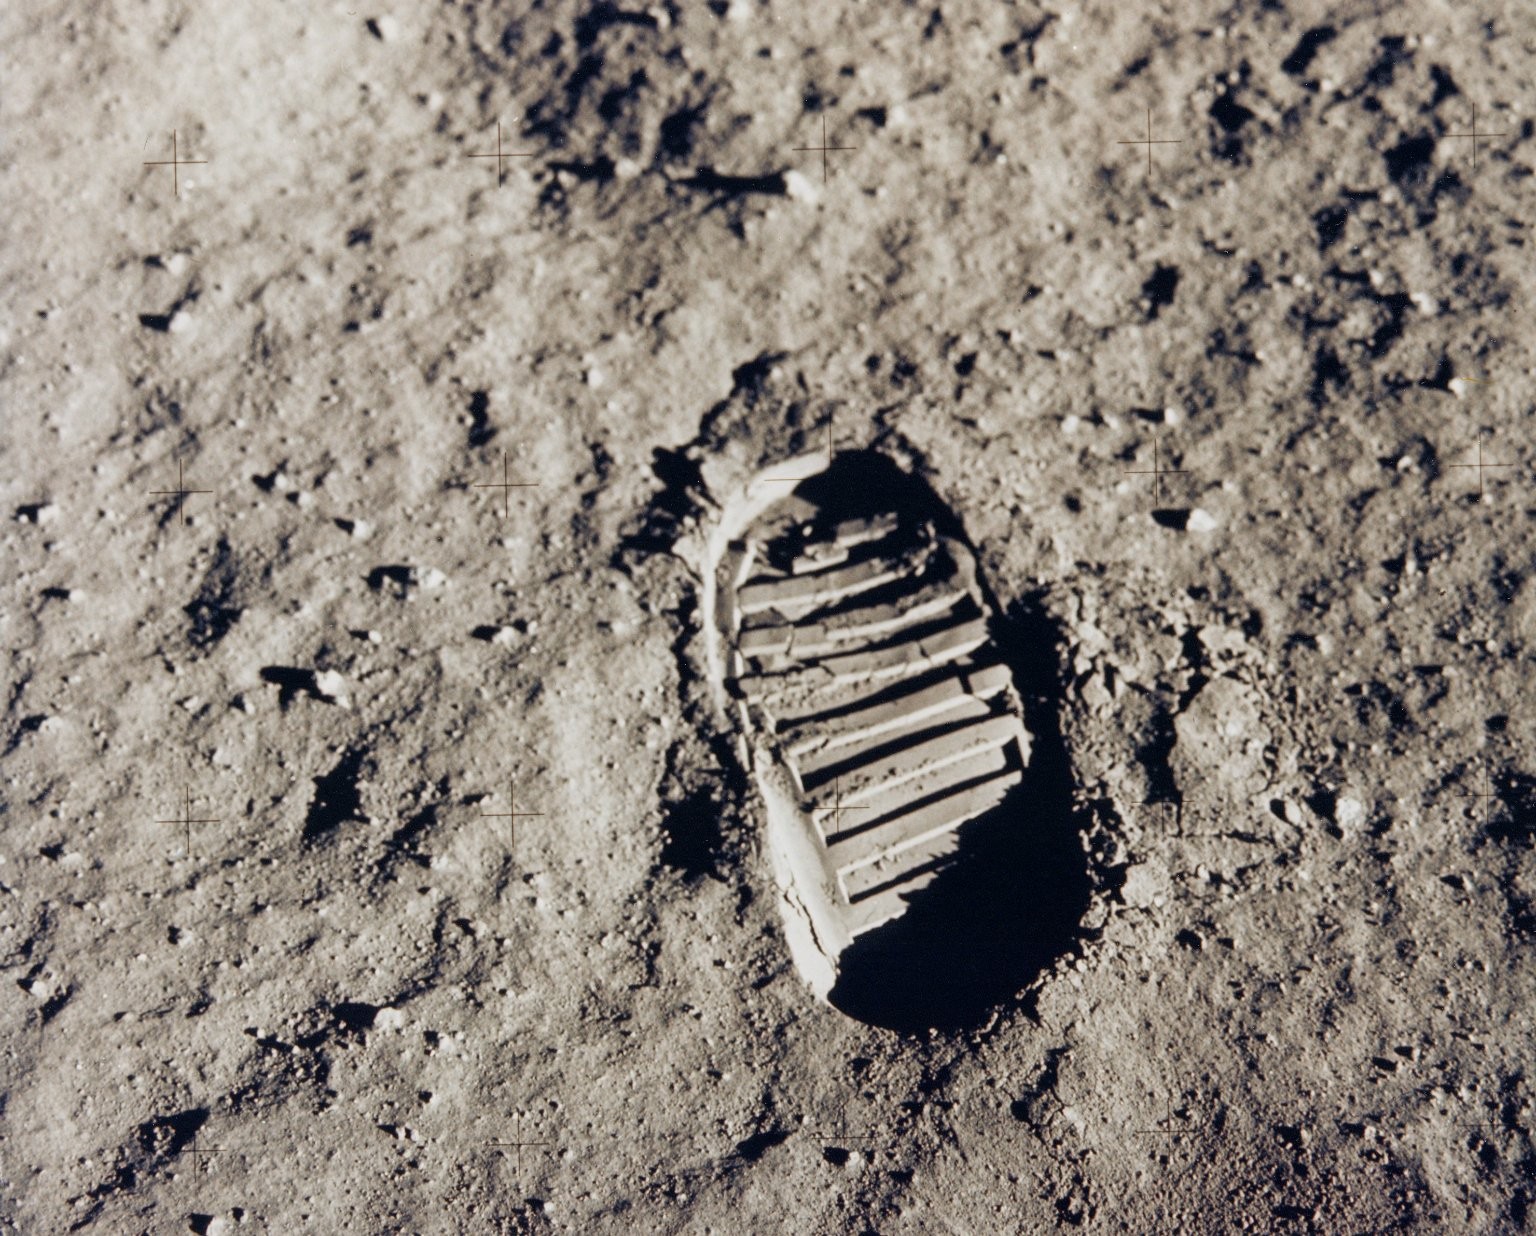 General 1536x1236 space Moon footprints